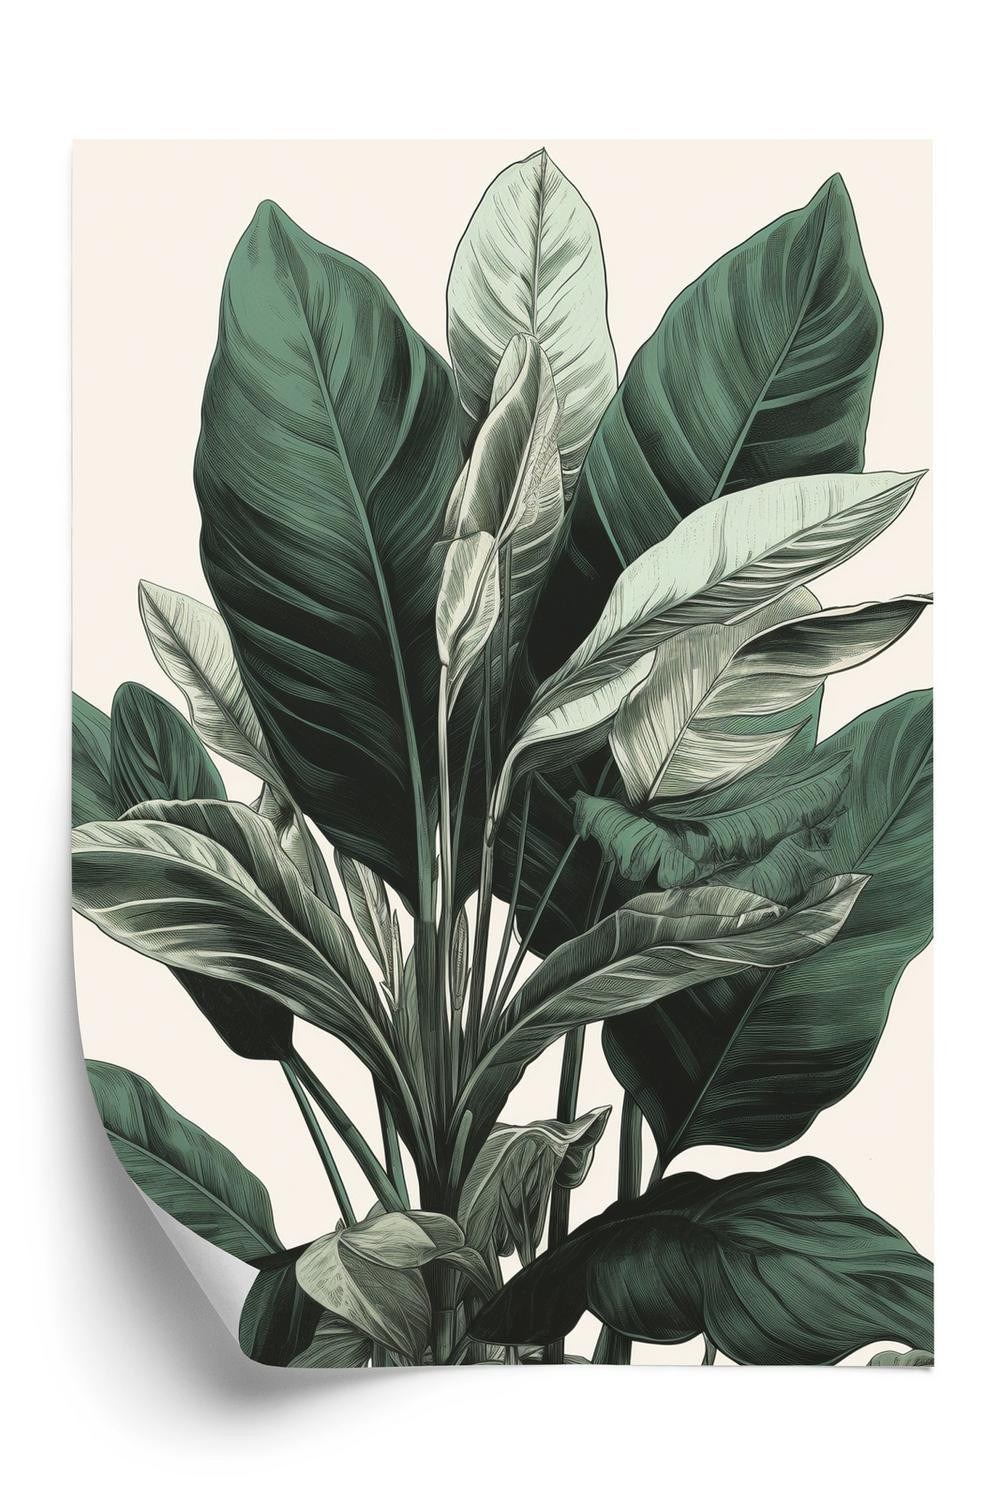 Plakat - Grøn philodendron plante